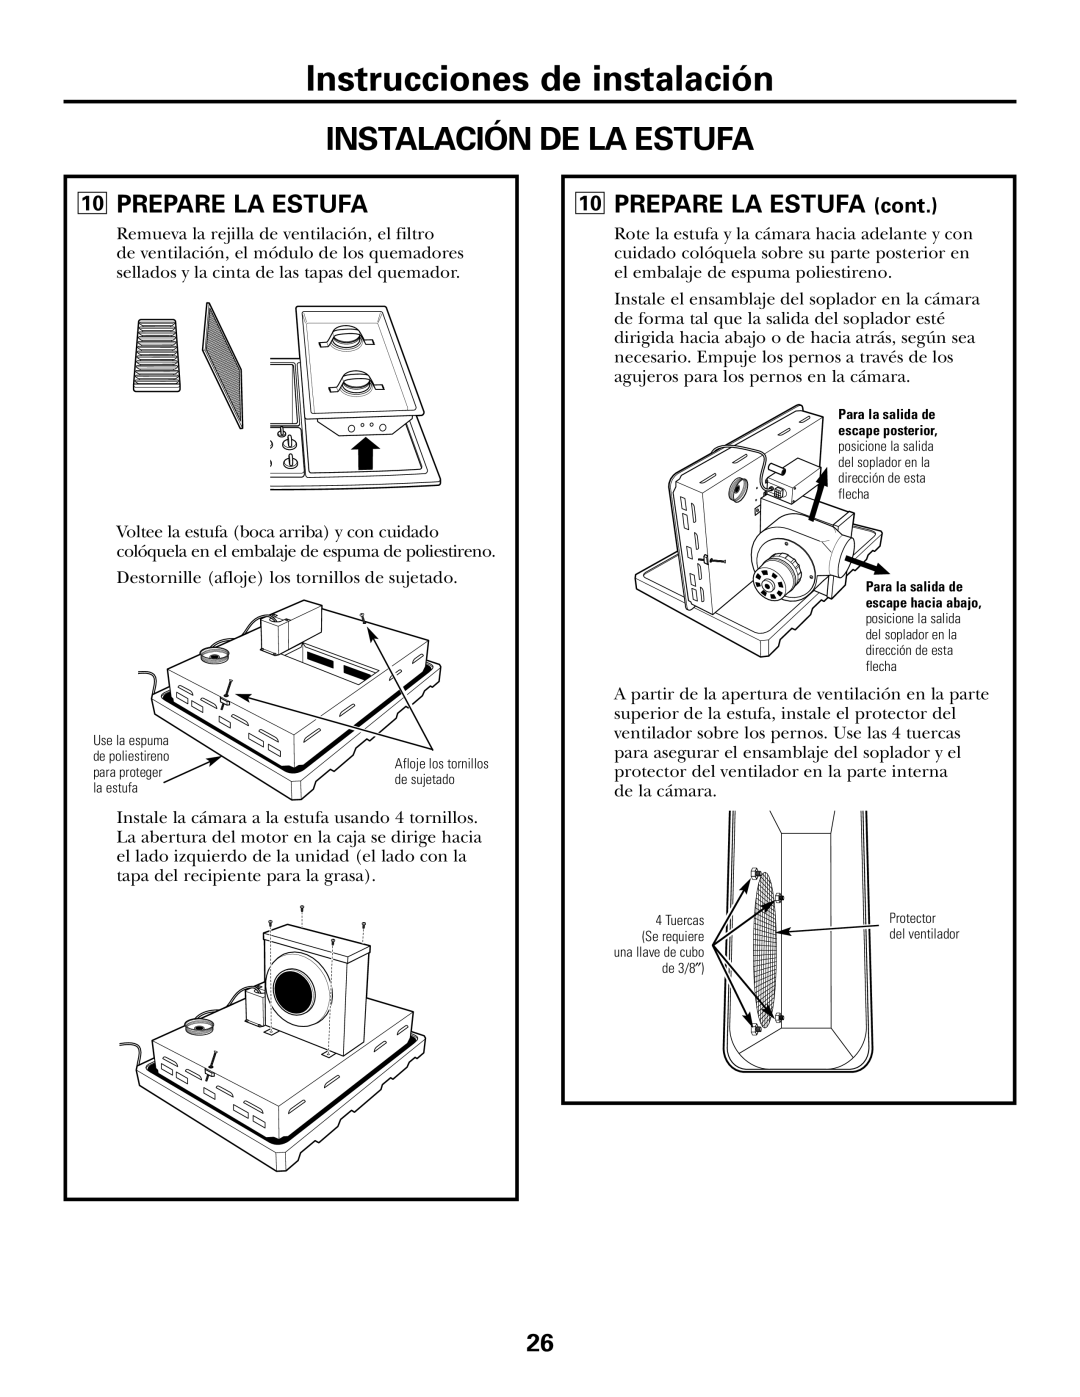 GE JGP990 manual Instalación De La Estufa, Instrucciones de instalación, 10PREPARE LA ESTUFA cont 